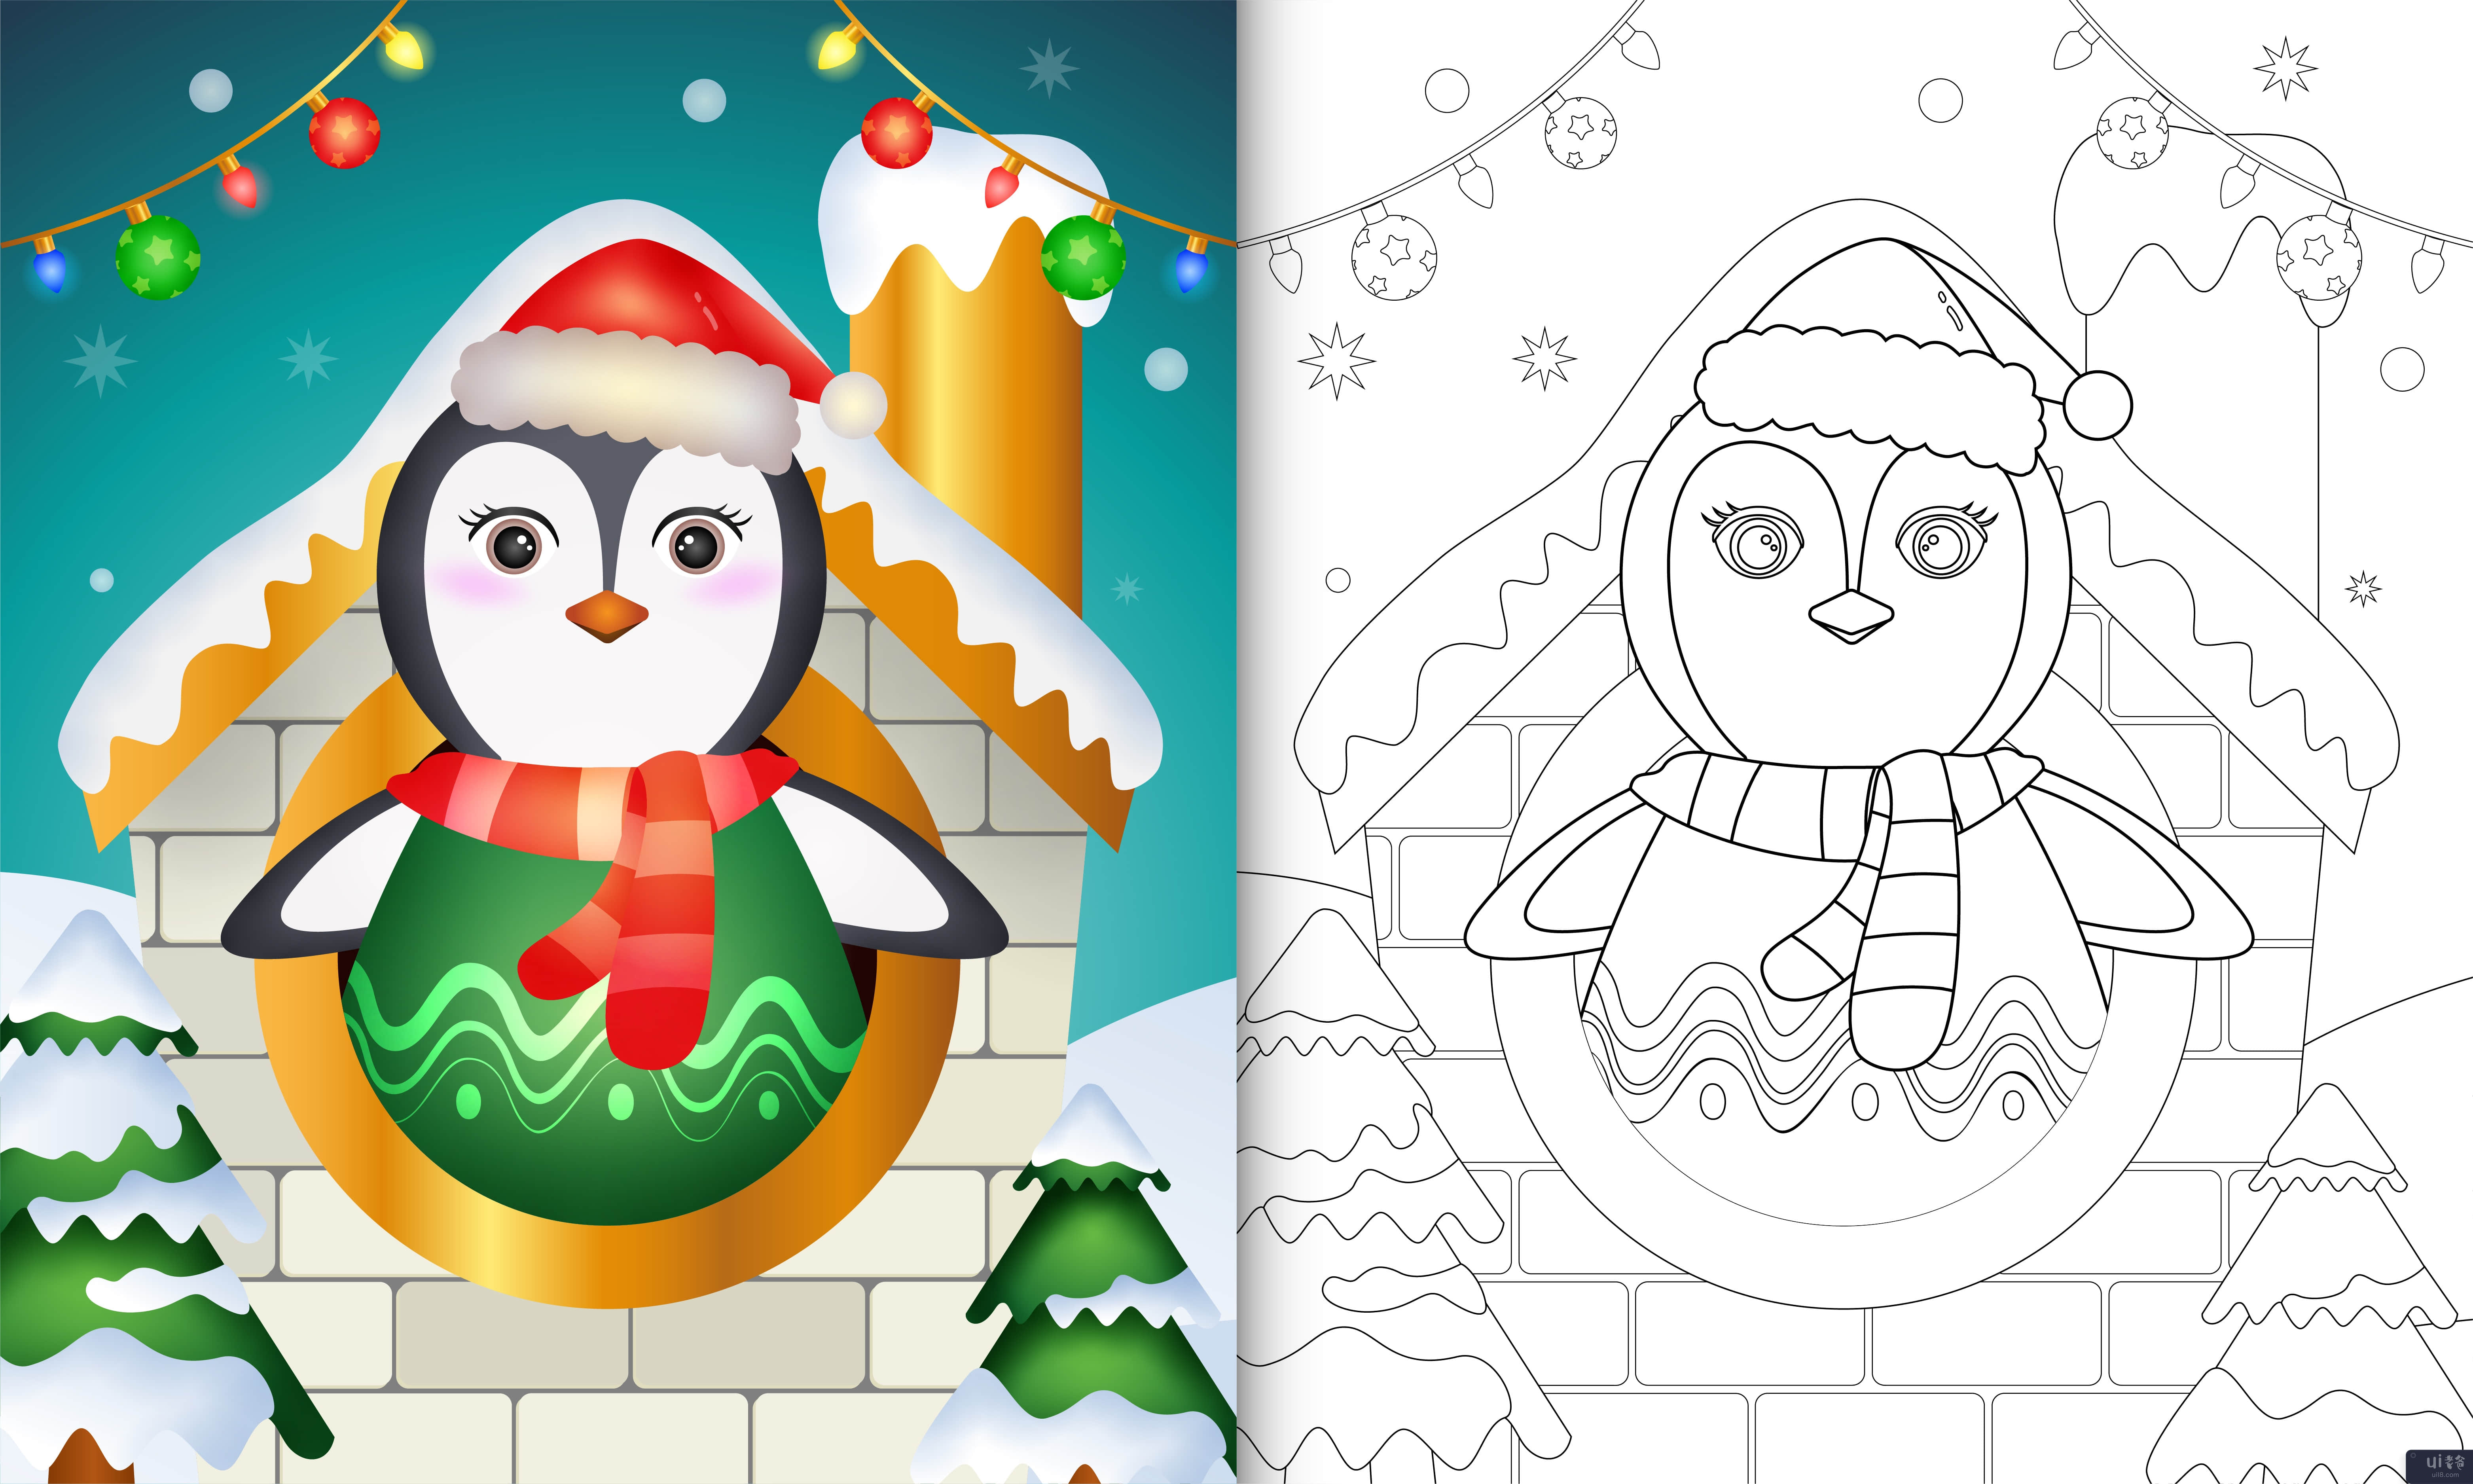 屋内有可爱企鹅圣诞人物的着色书(coloring book with a cute penguin christmas characters inside the house)插图2